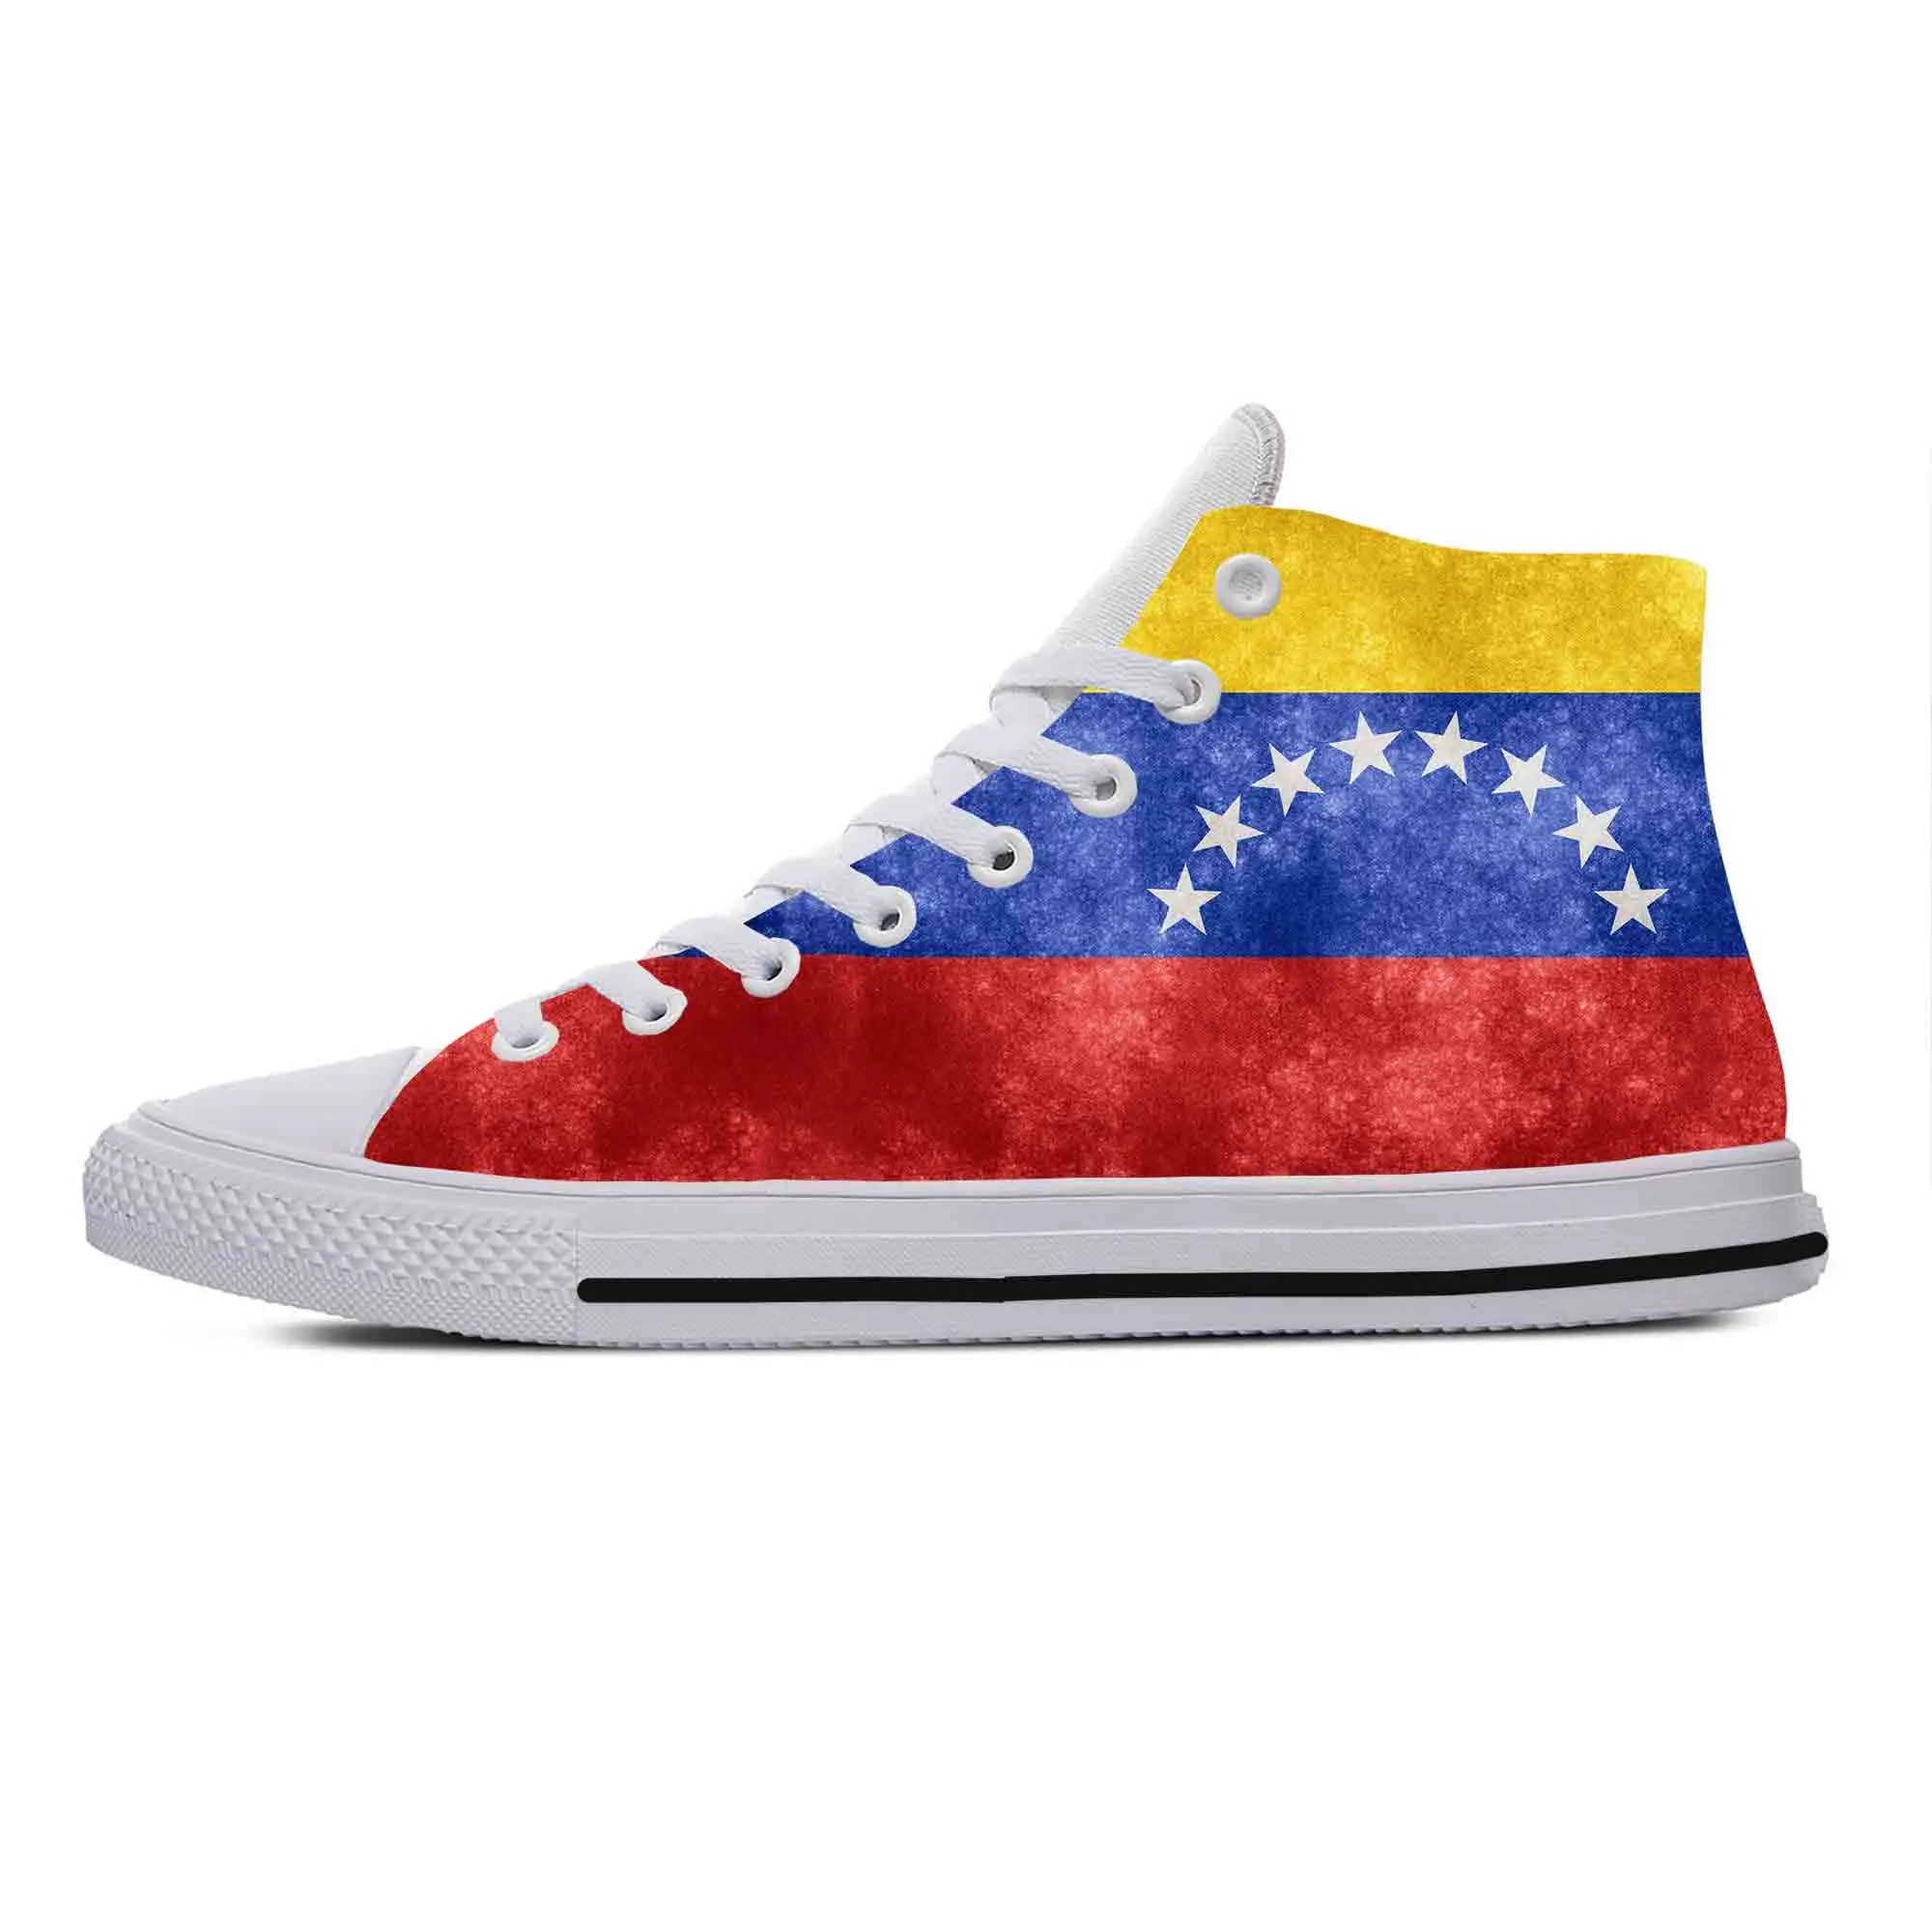 Венесуэла Венесуэльский Флаг Патриотическая Гордость Модная Повседневная Тканевая Обувь С Высоким Берцем, Удобные Дышащие Мужские И Женские Кроссовки С 3D Принтом